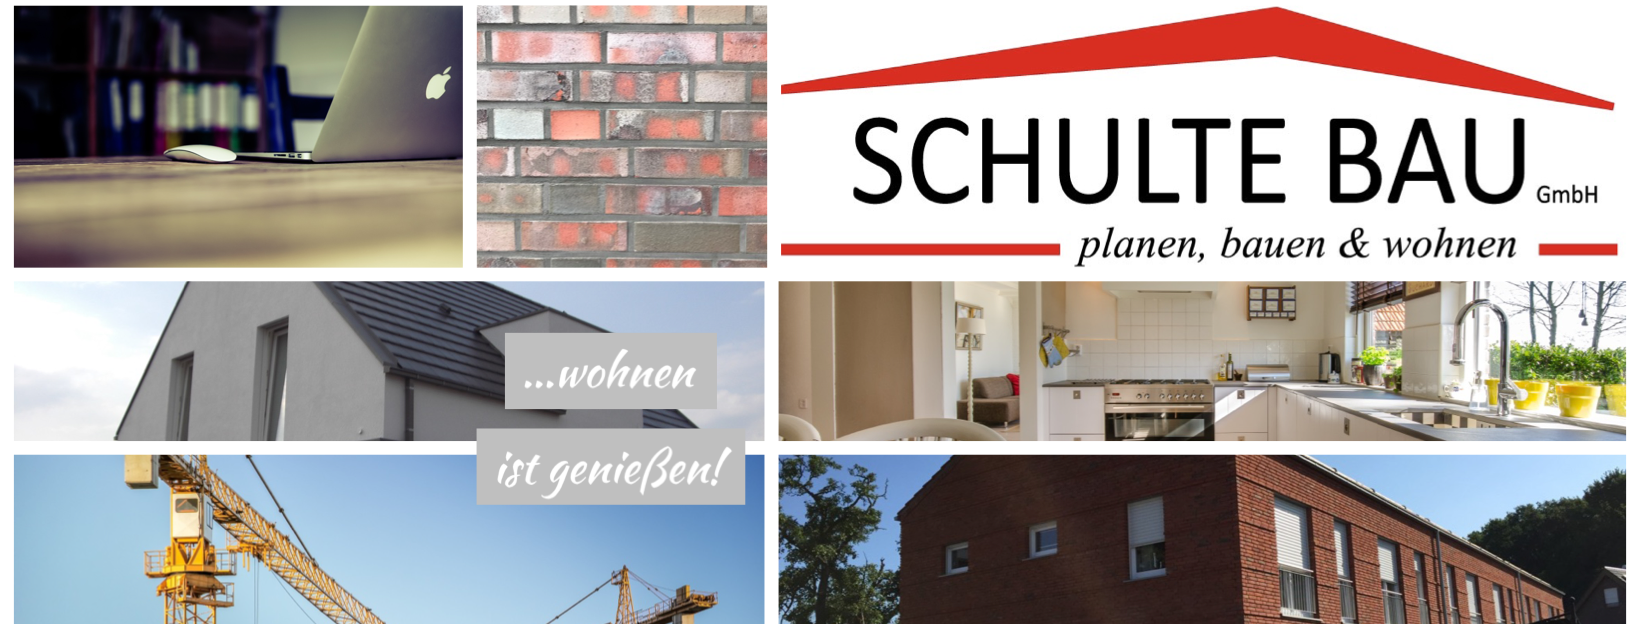 Give feedback - Feedback | SCHULTE BAU GmbH